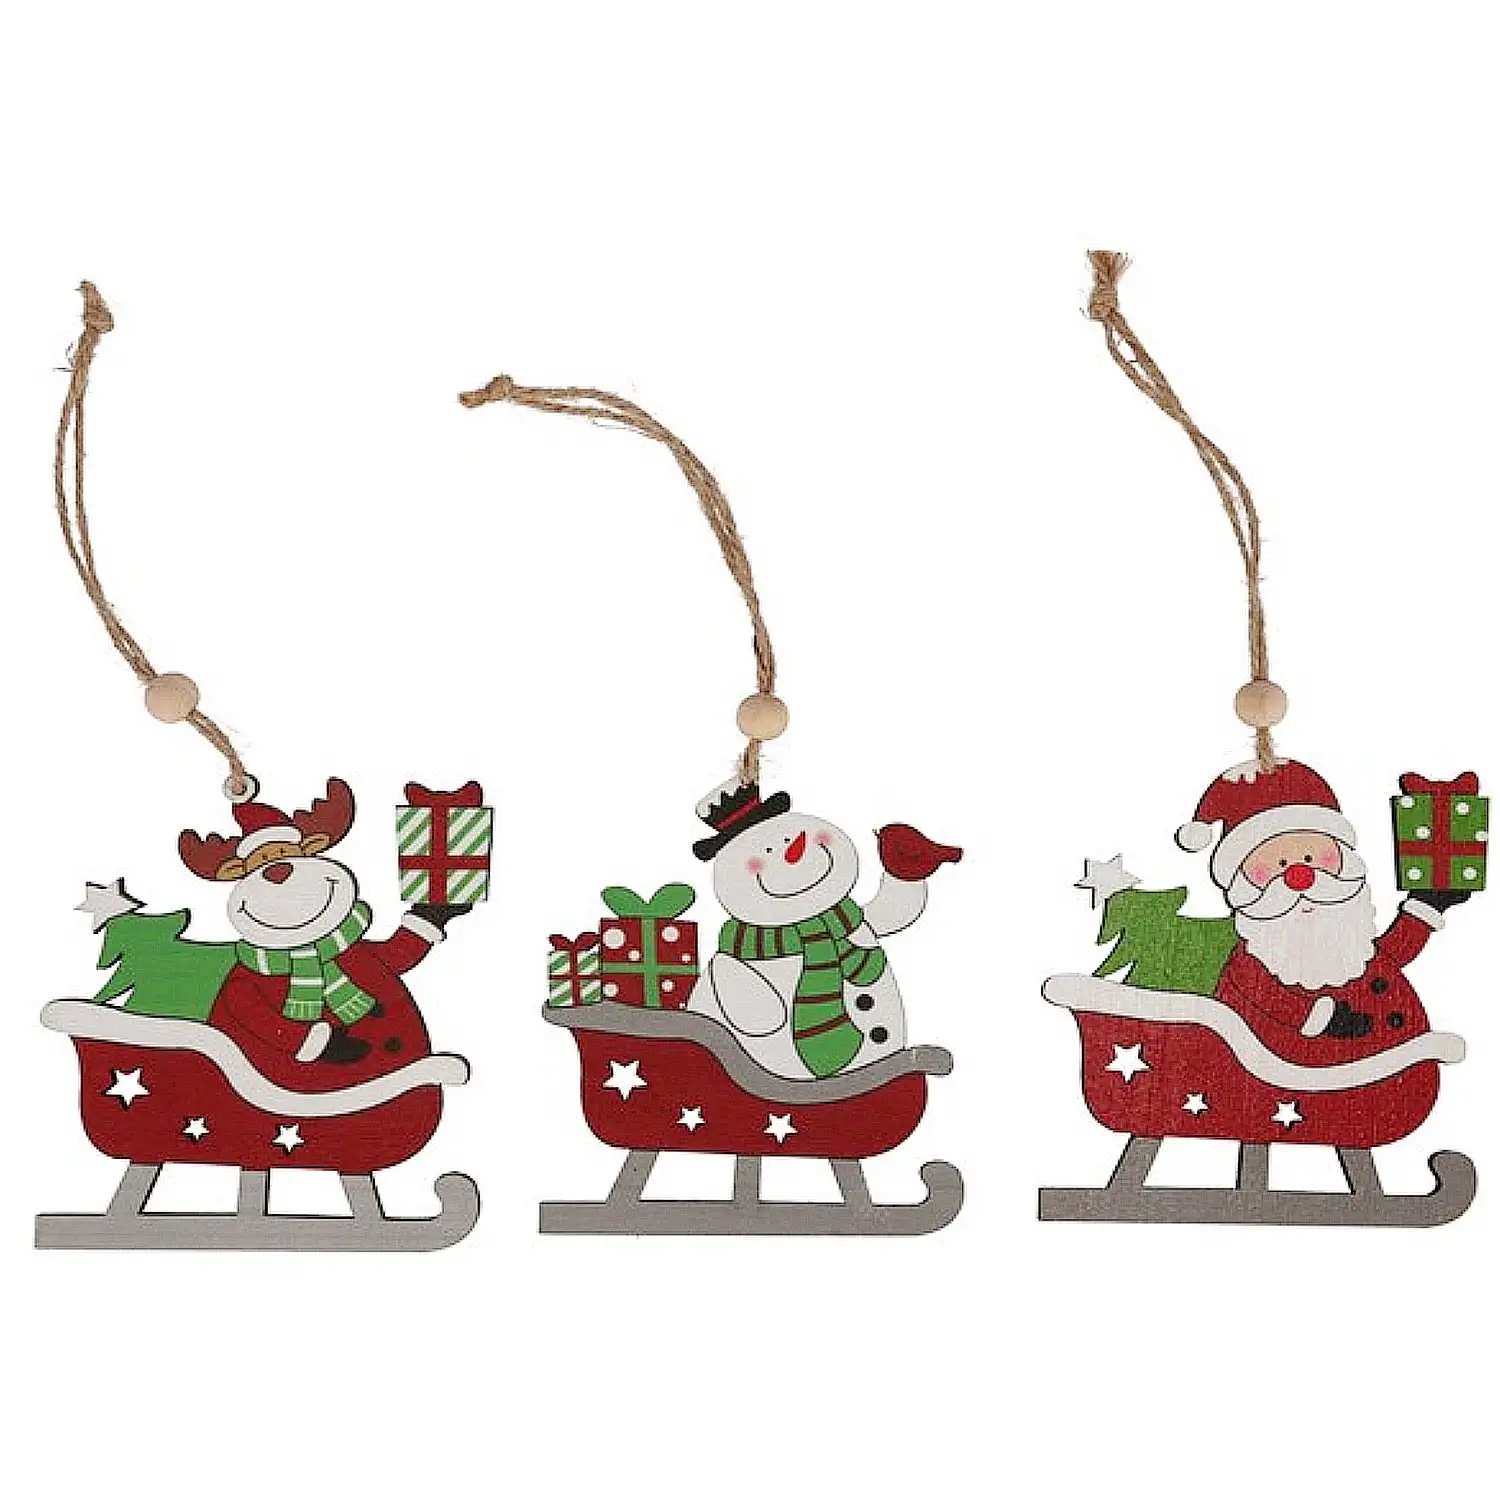 Pack de 3 figuritas Papá Noel con trineo.